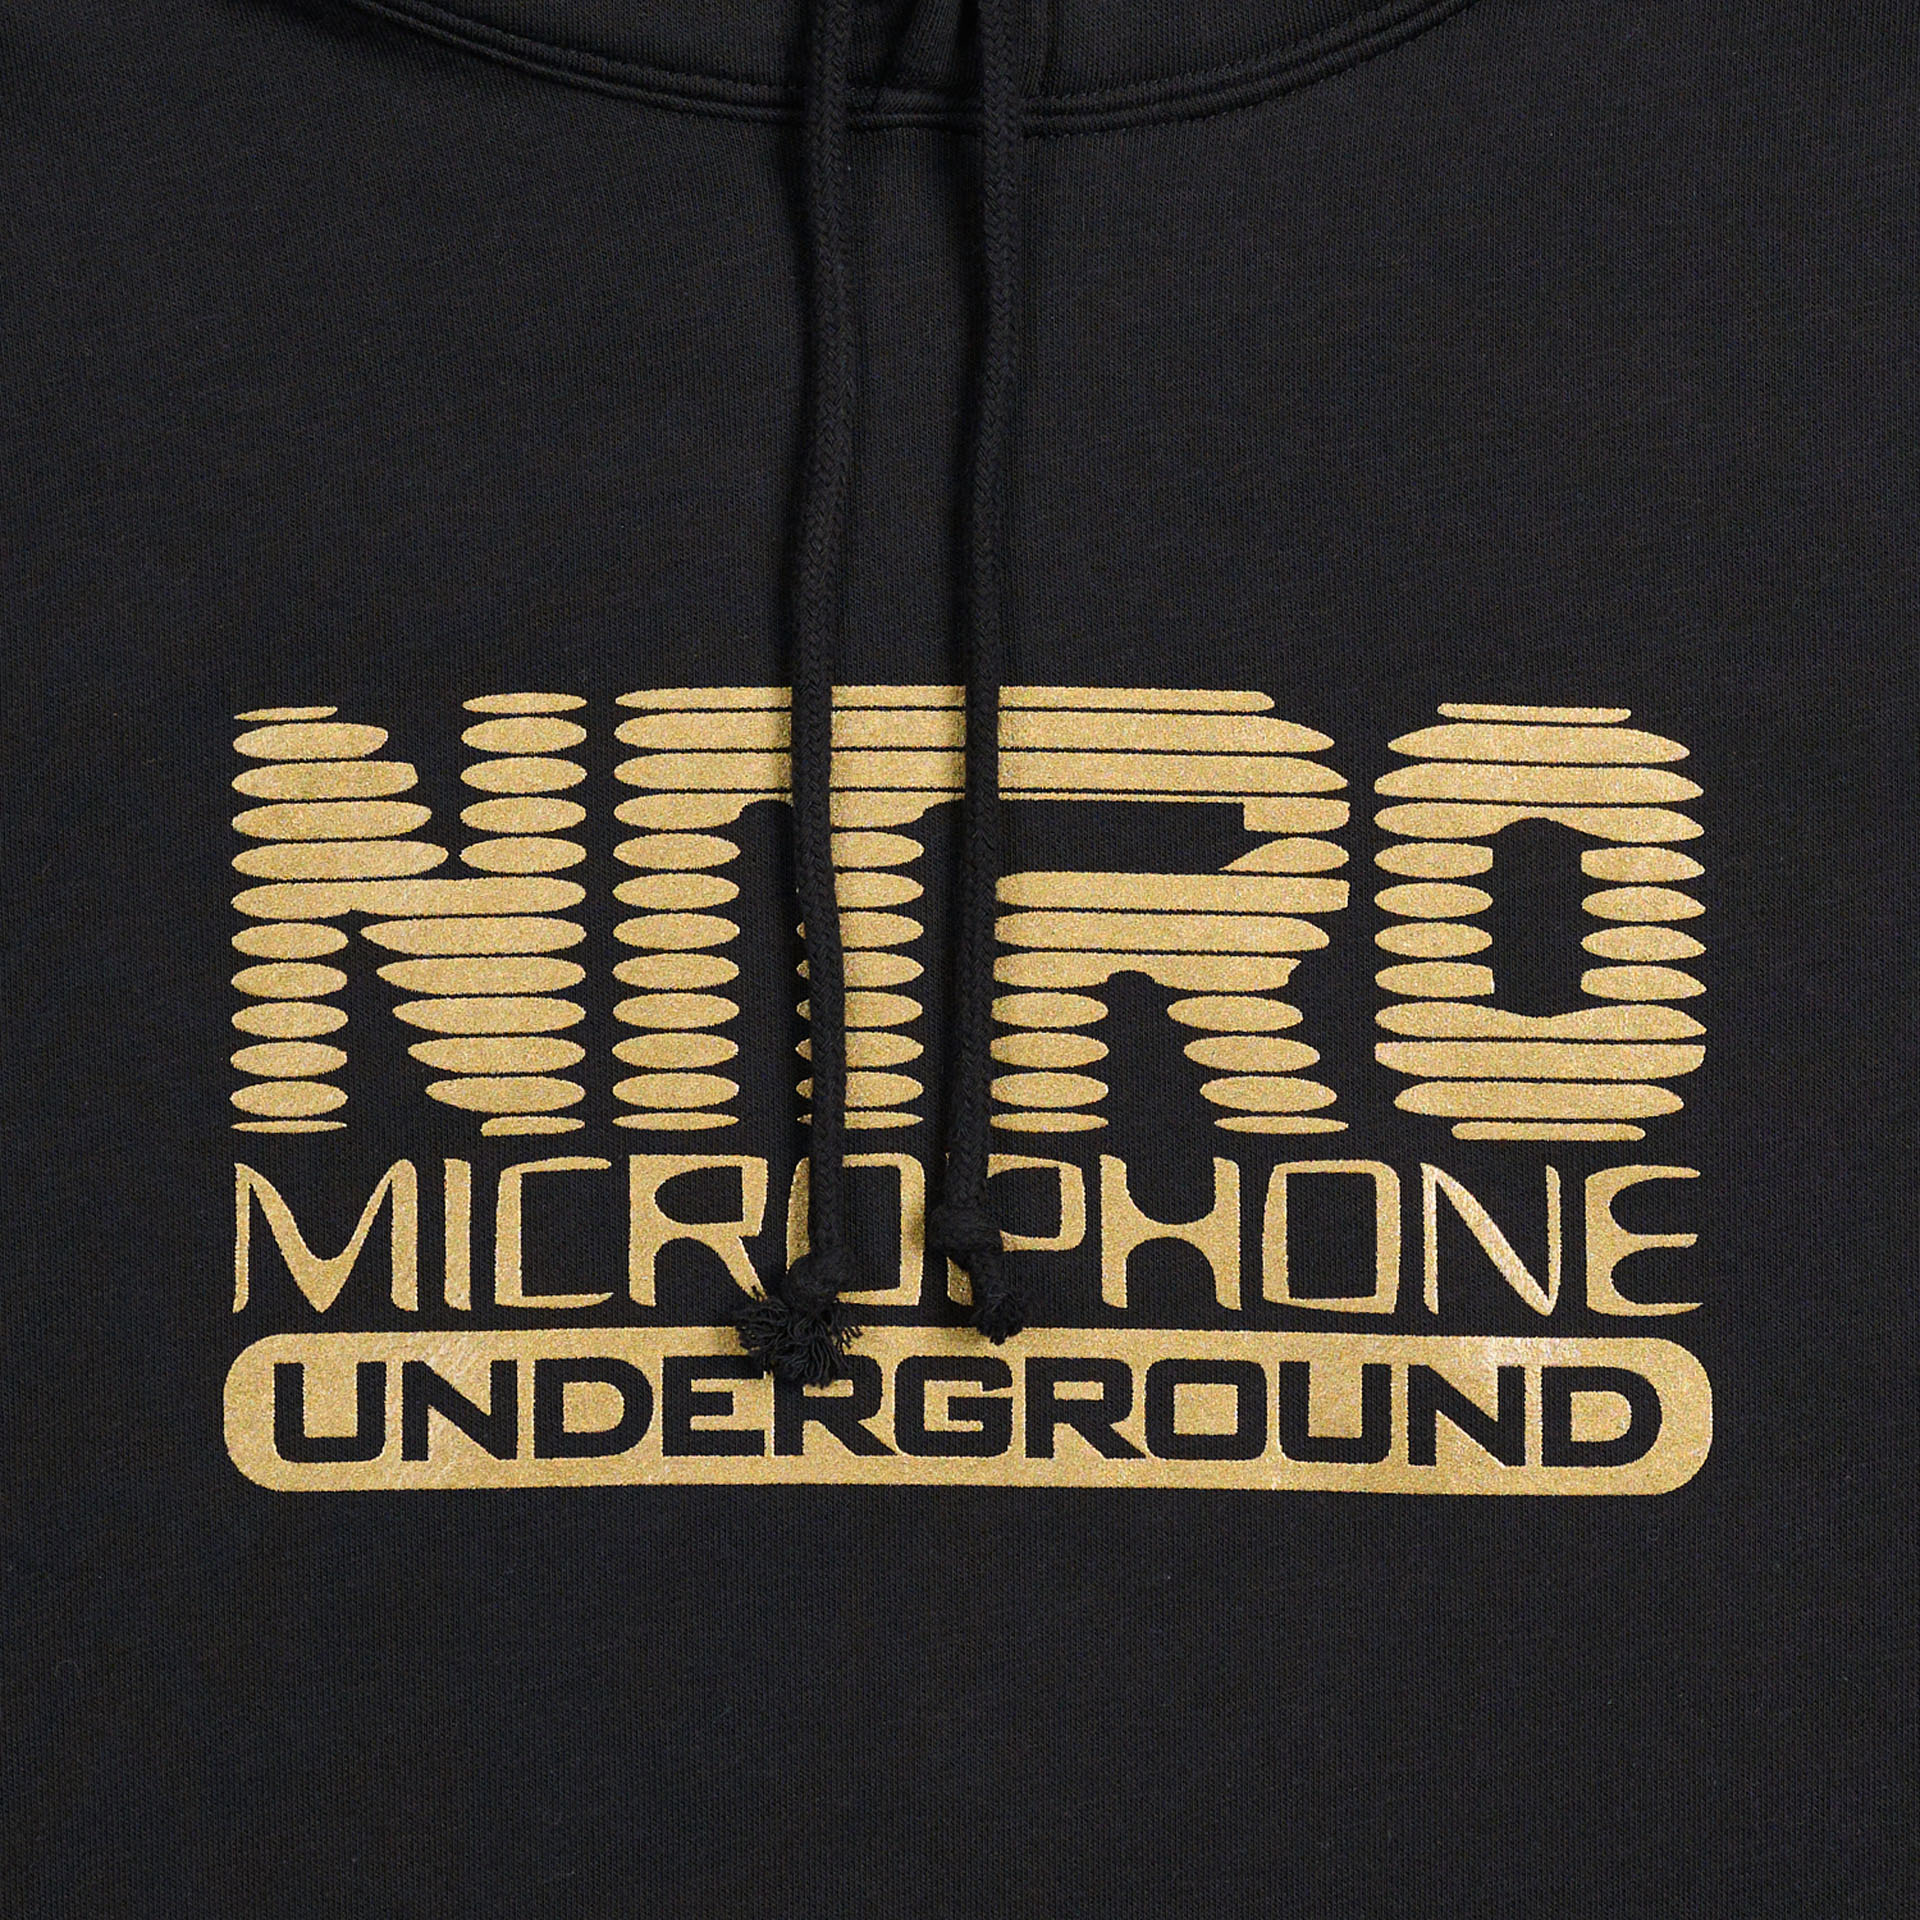 優待価格 NITRO MICROPHONE UNDERGROUND コーチジャケット XL - メンズ